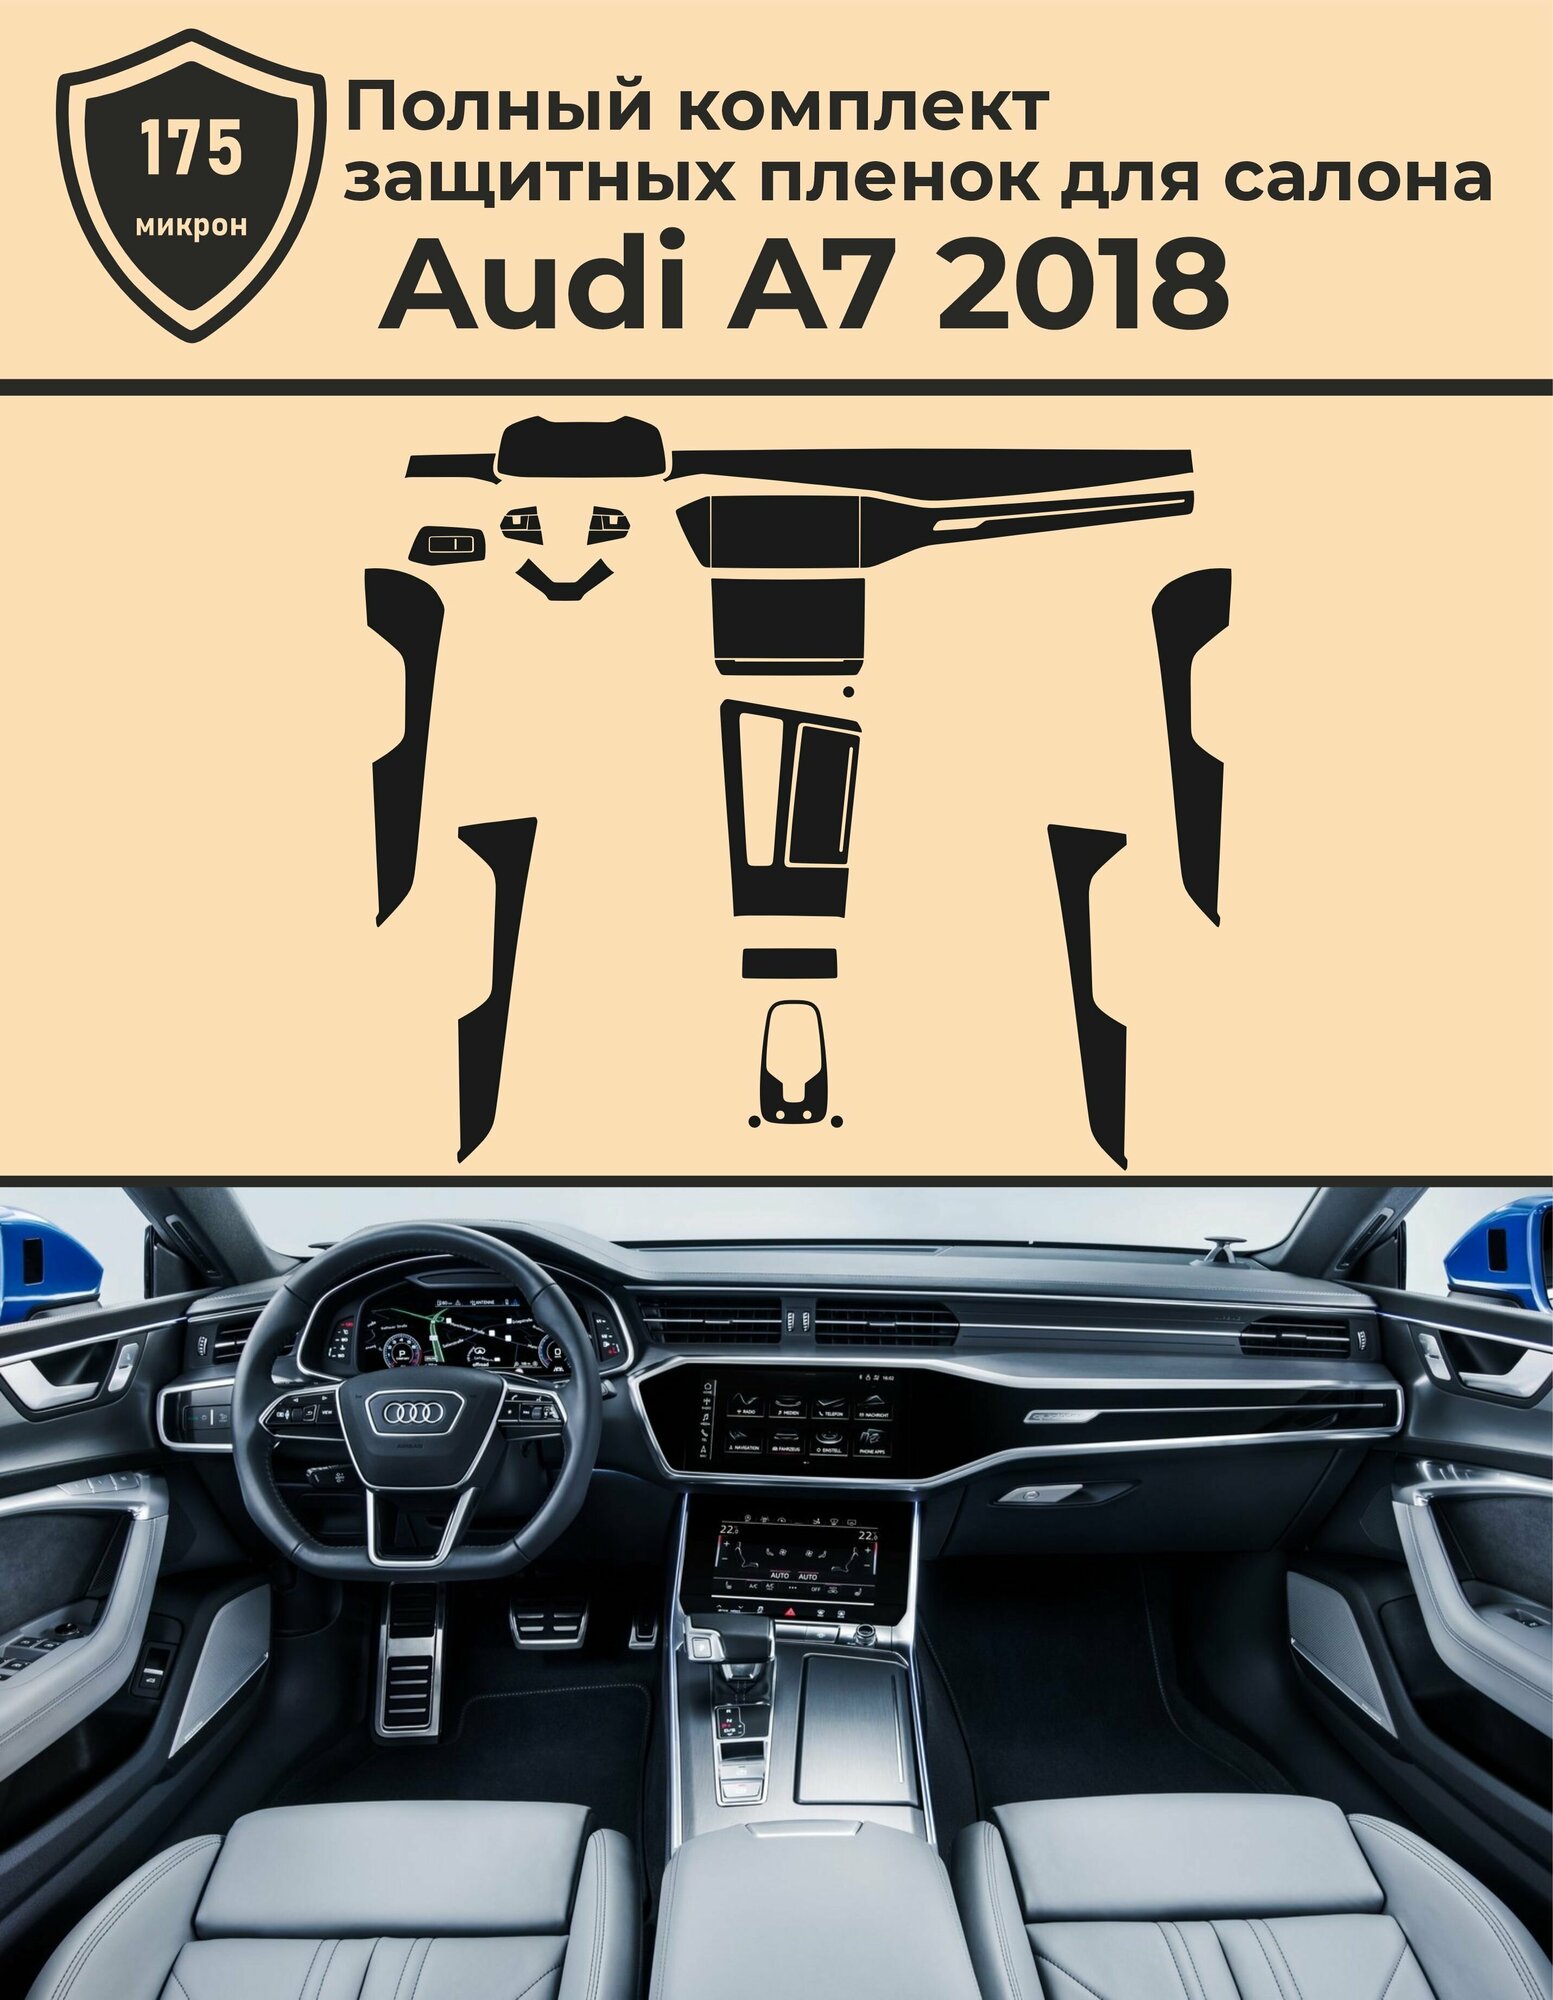 Audi A7/Полный комплект защитных пленок для салона